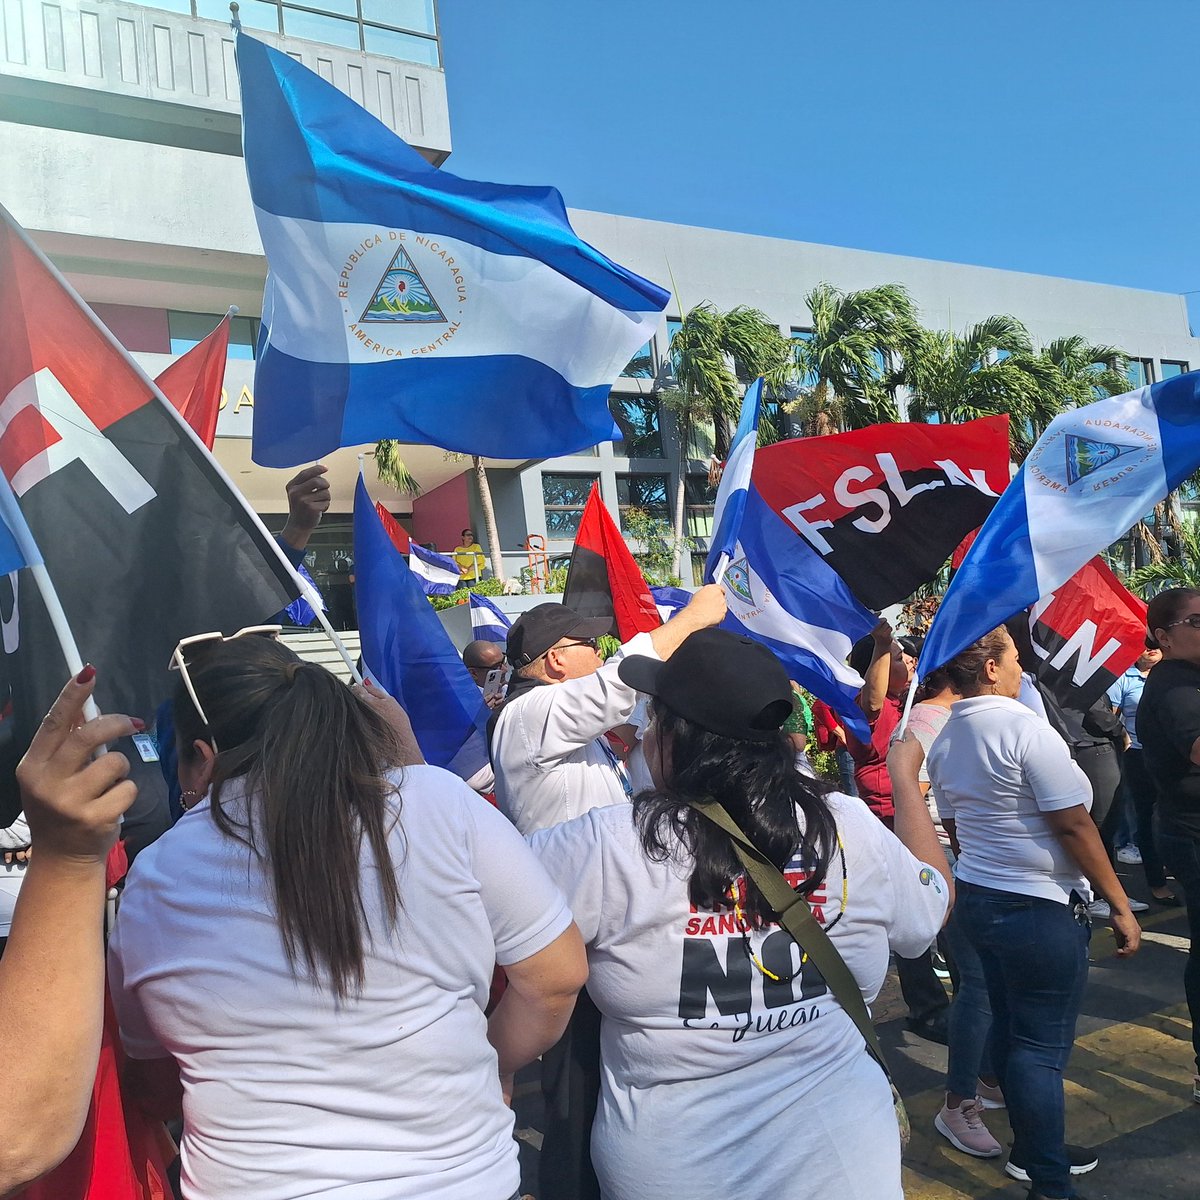 Hoy día de la Paz nucaraguense, el pueblo hizo la bandera azul y blanco y canta el himno, por nuestra dignidad. #SomosVictoriasVerdaderas #PLOMO19